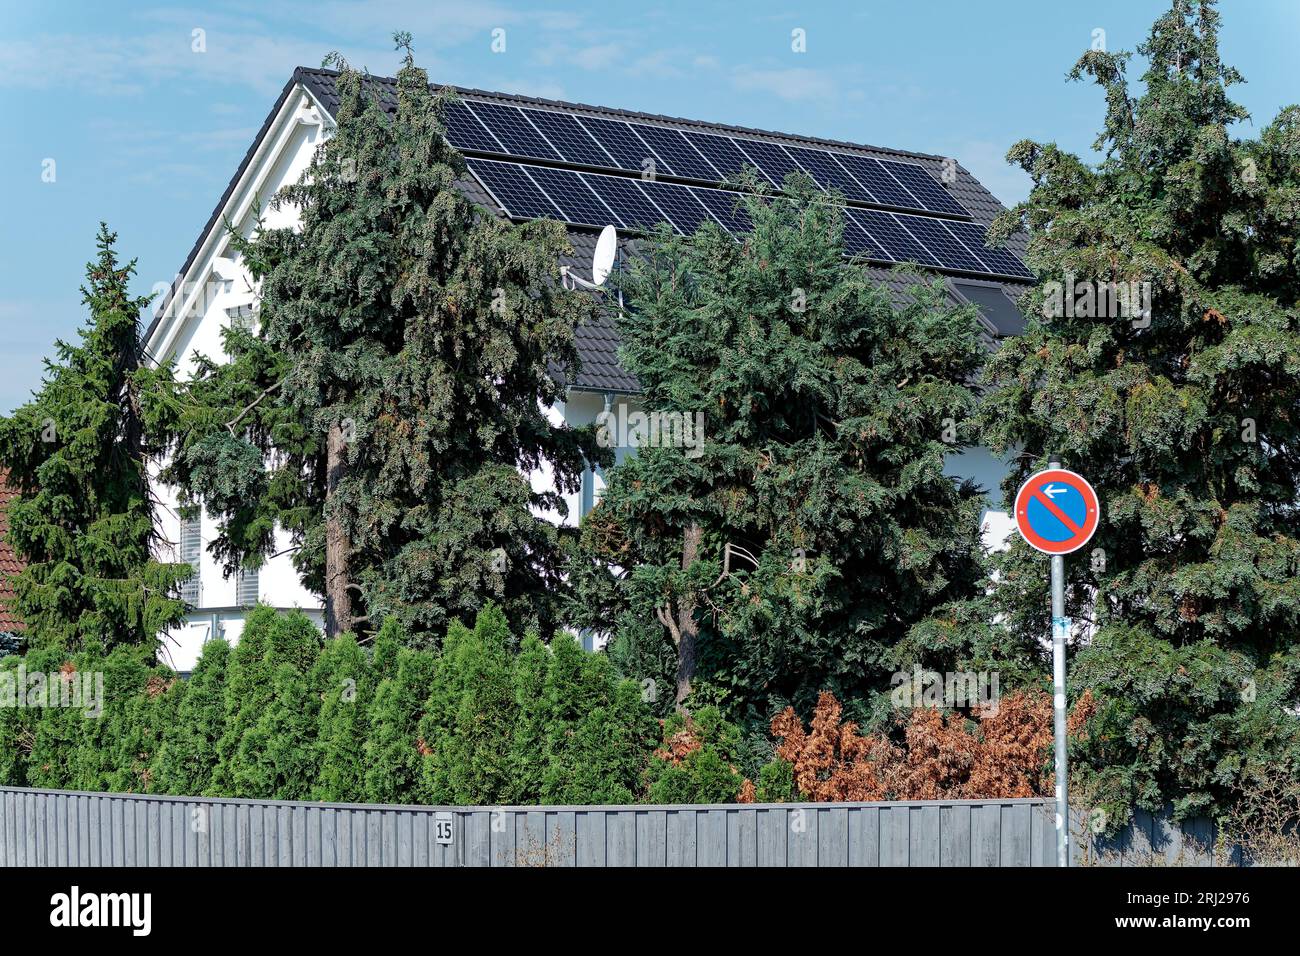 Aumento de los costos de electricidad y autoproducción de electricidad, techo de la casa con elementos fotovoltaicos Foto de stock